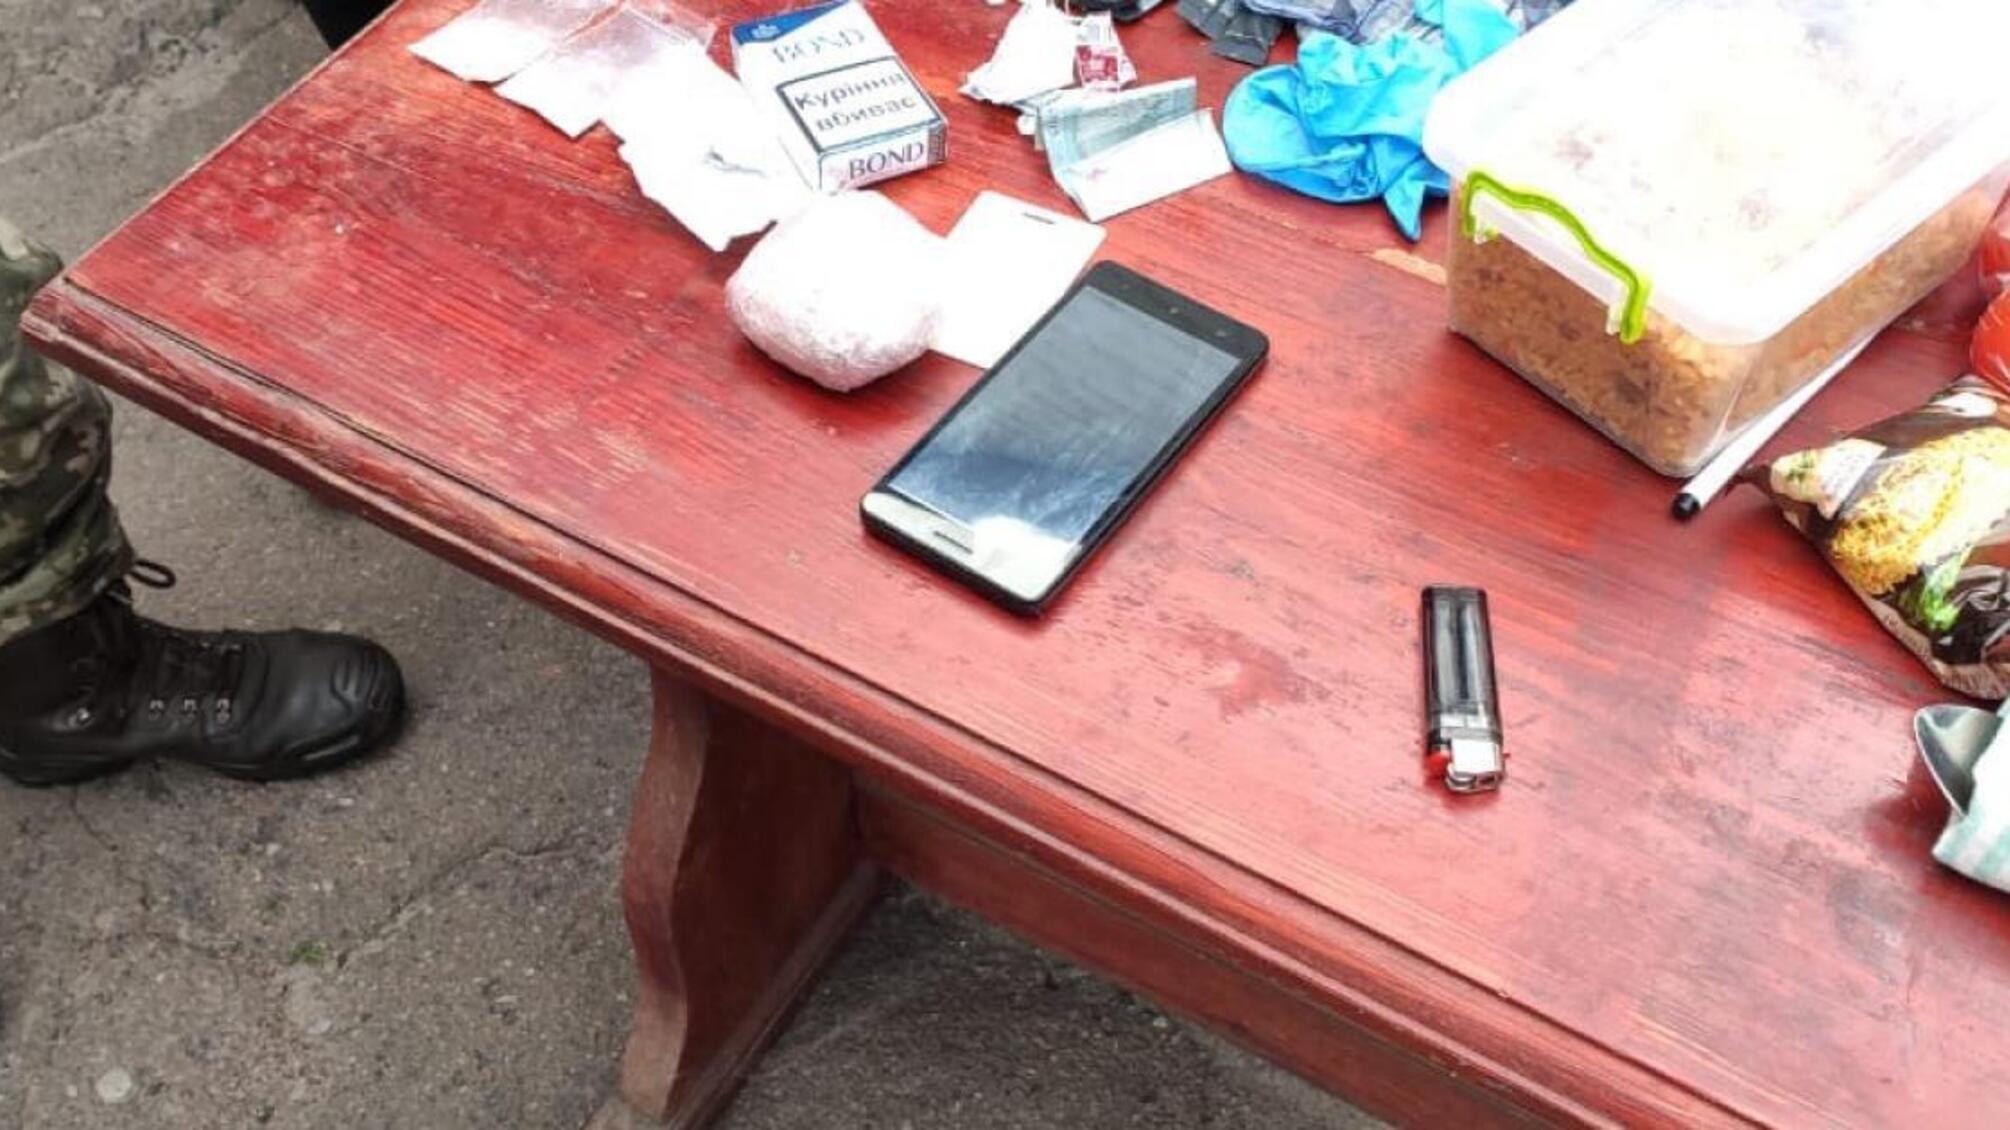 Продаж наркотичних речовин у Чернігівському слідчому ізоляторі – ДБР повідомило про підозру трьом особам